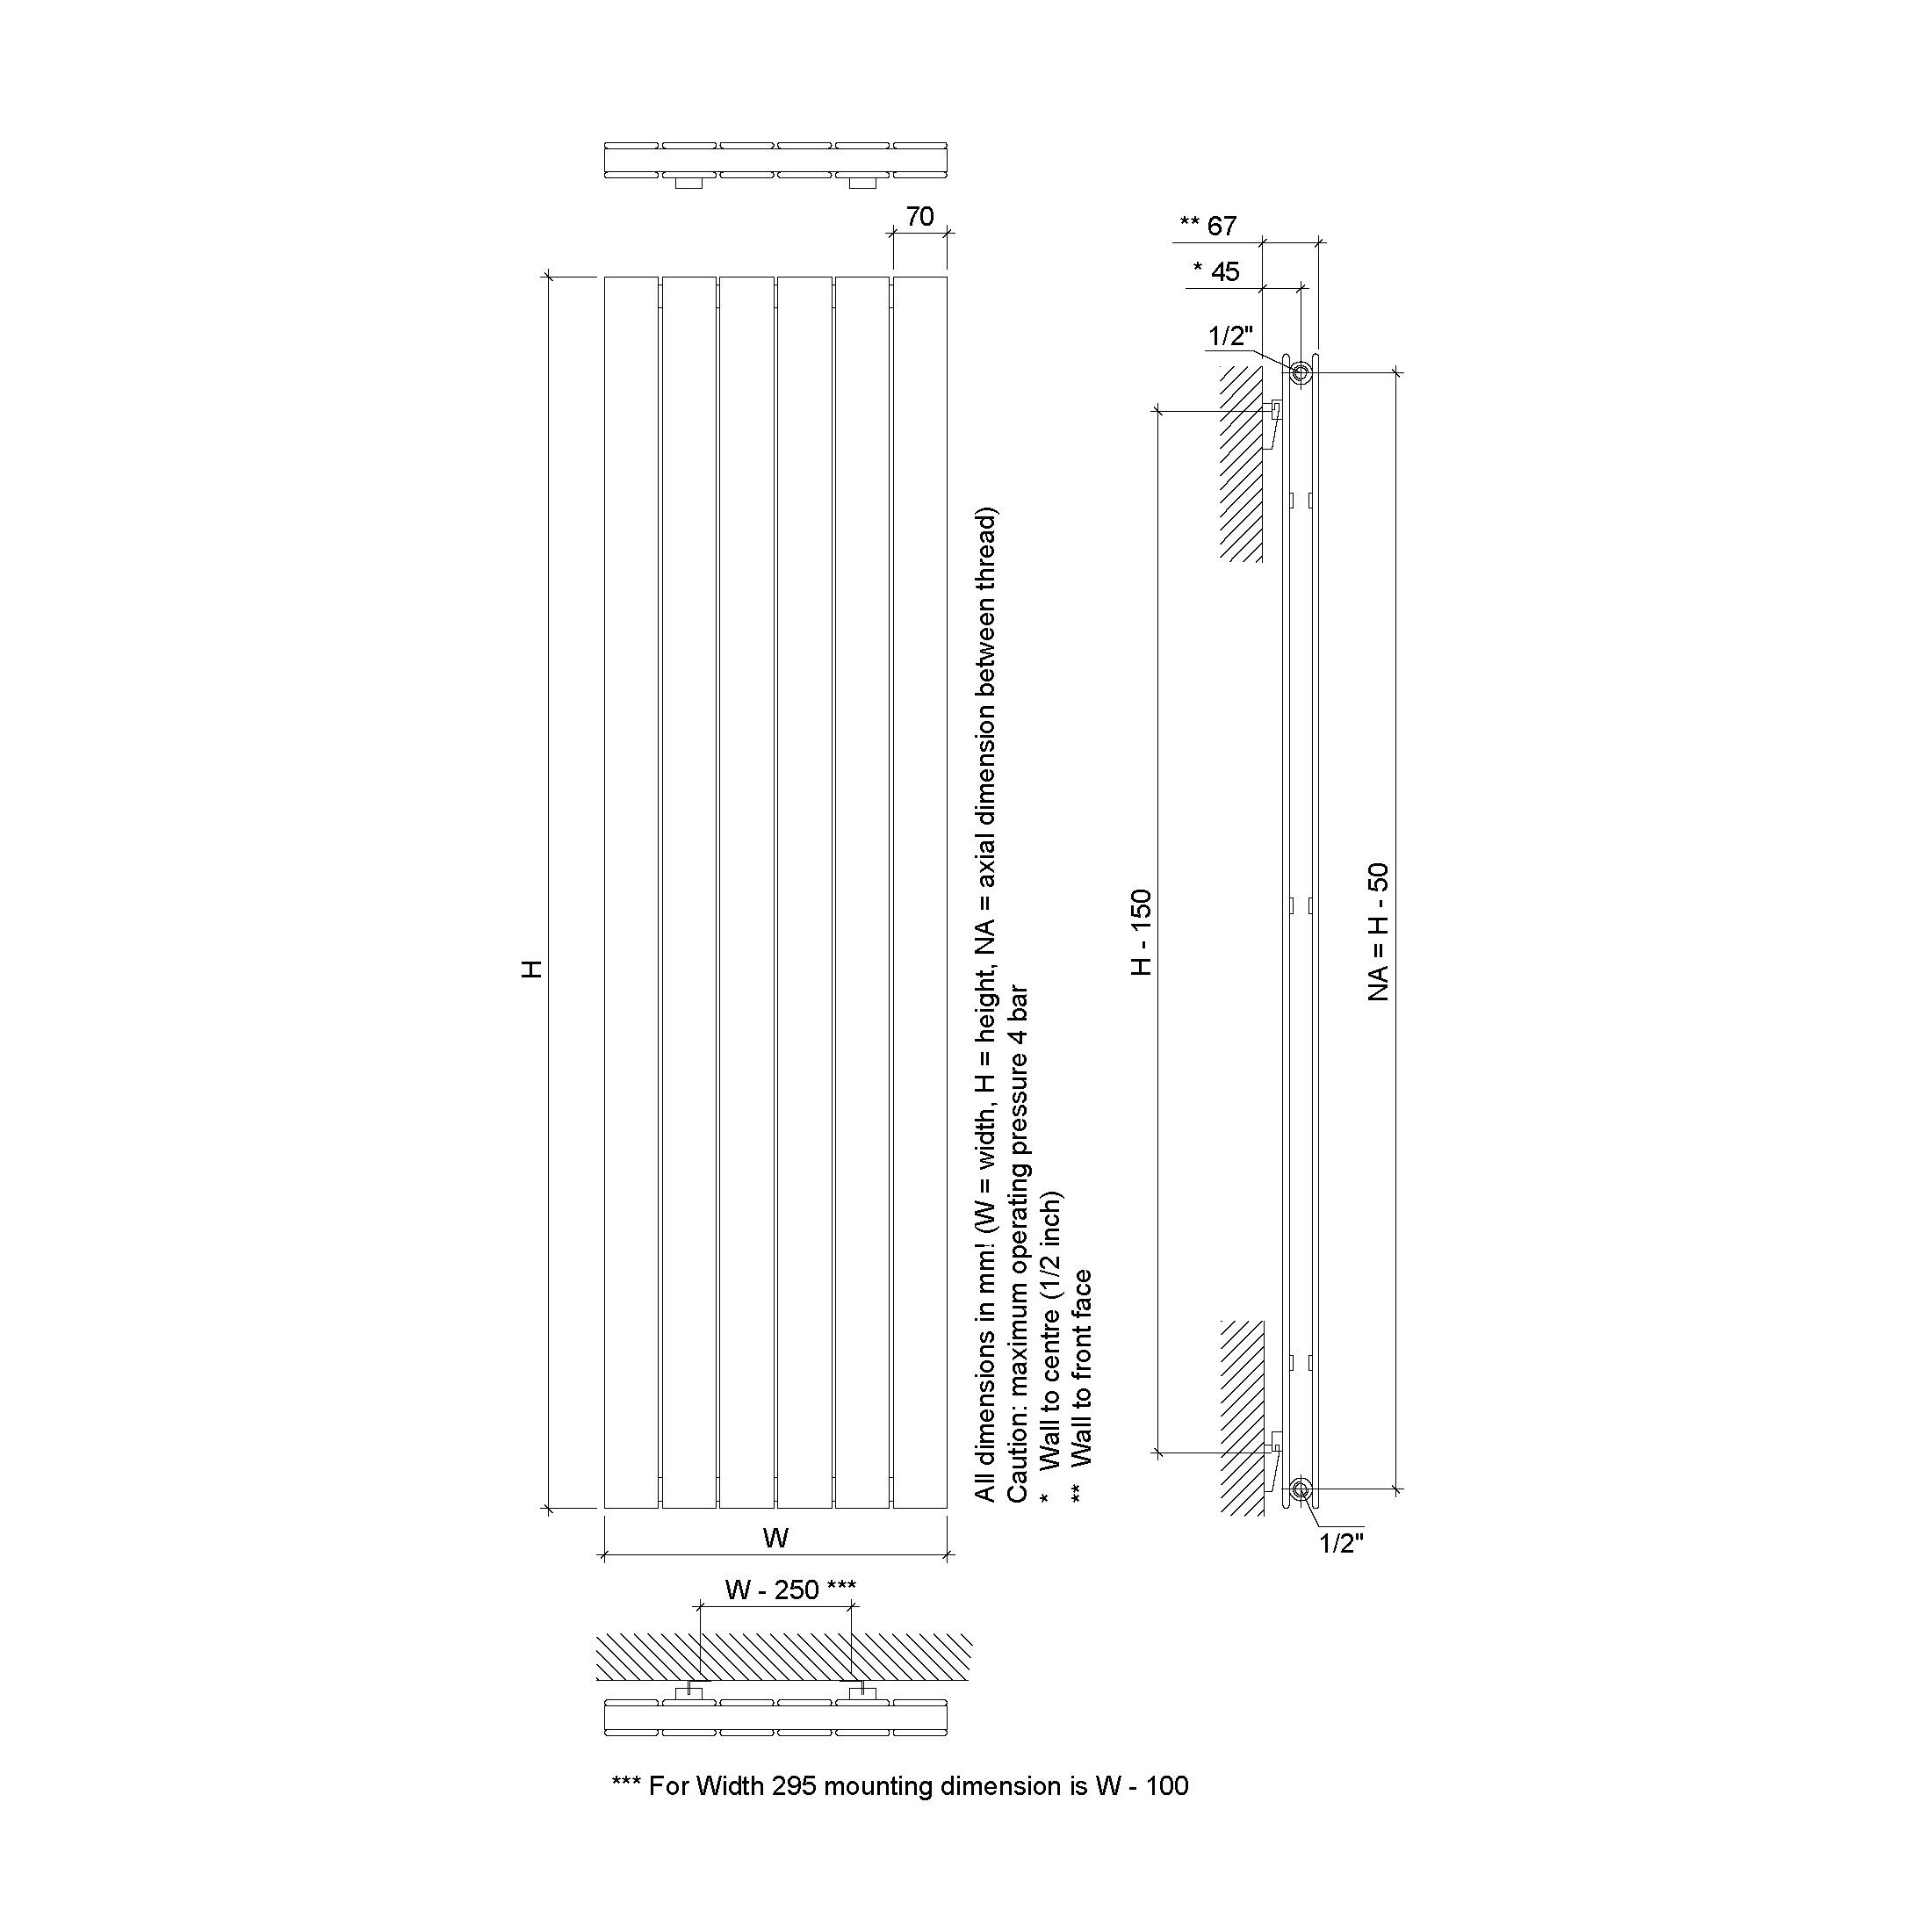 Ximax Vertirad Duplex Satin white Vertical Designer panel Radiator, (W)445mm x (H)1800mm